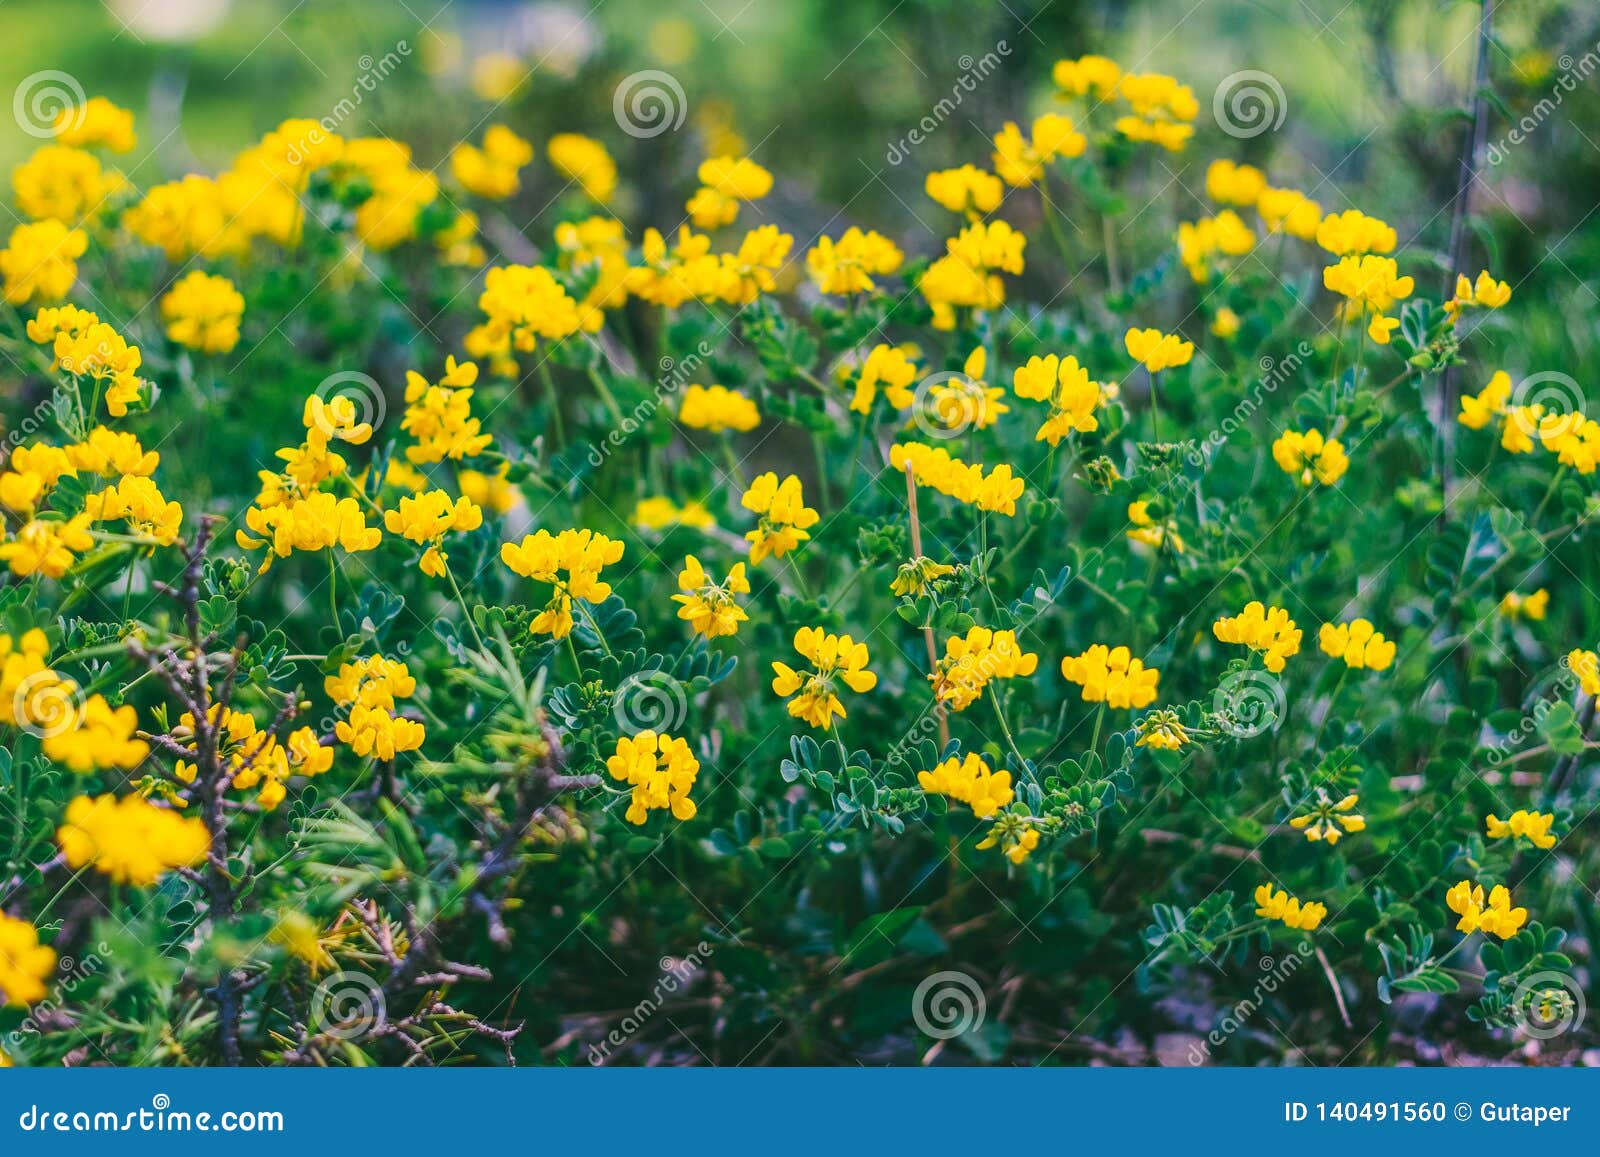 Fleurs Jaunes De Forêt Sauvage Photo stock - Image du horizontal, saison:  140491560